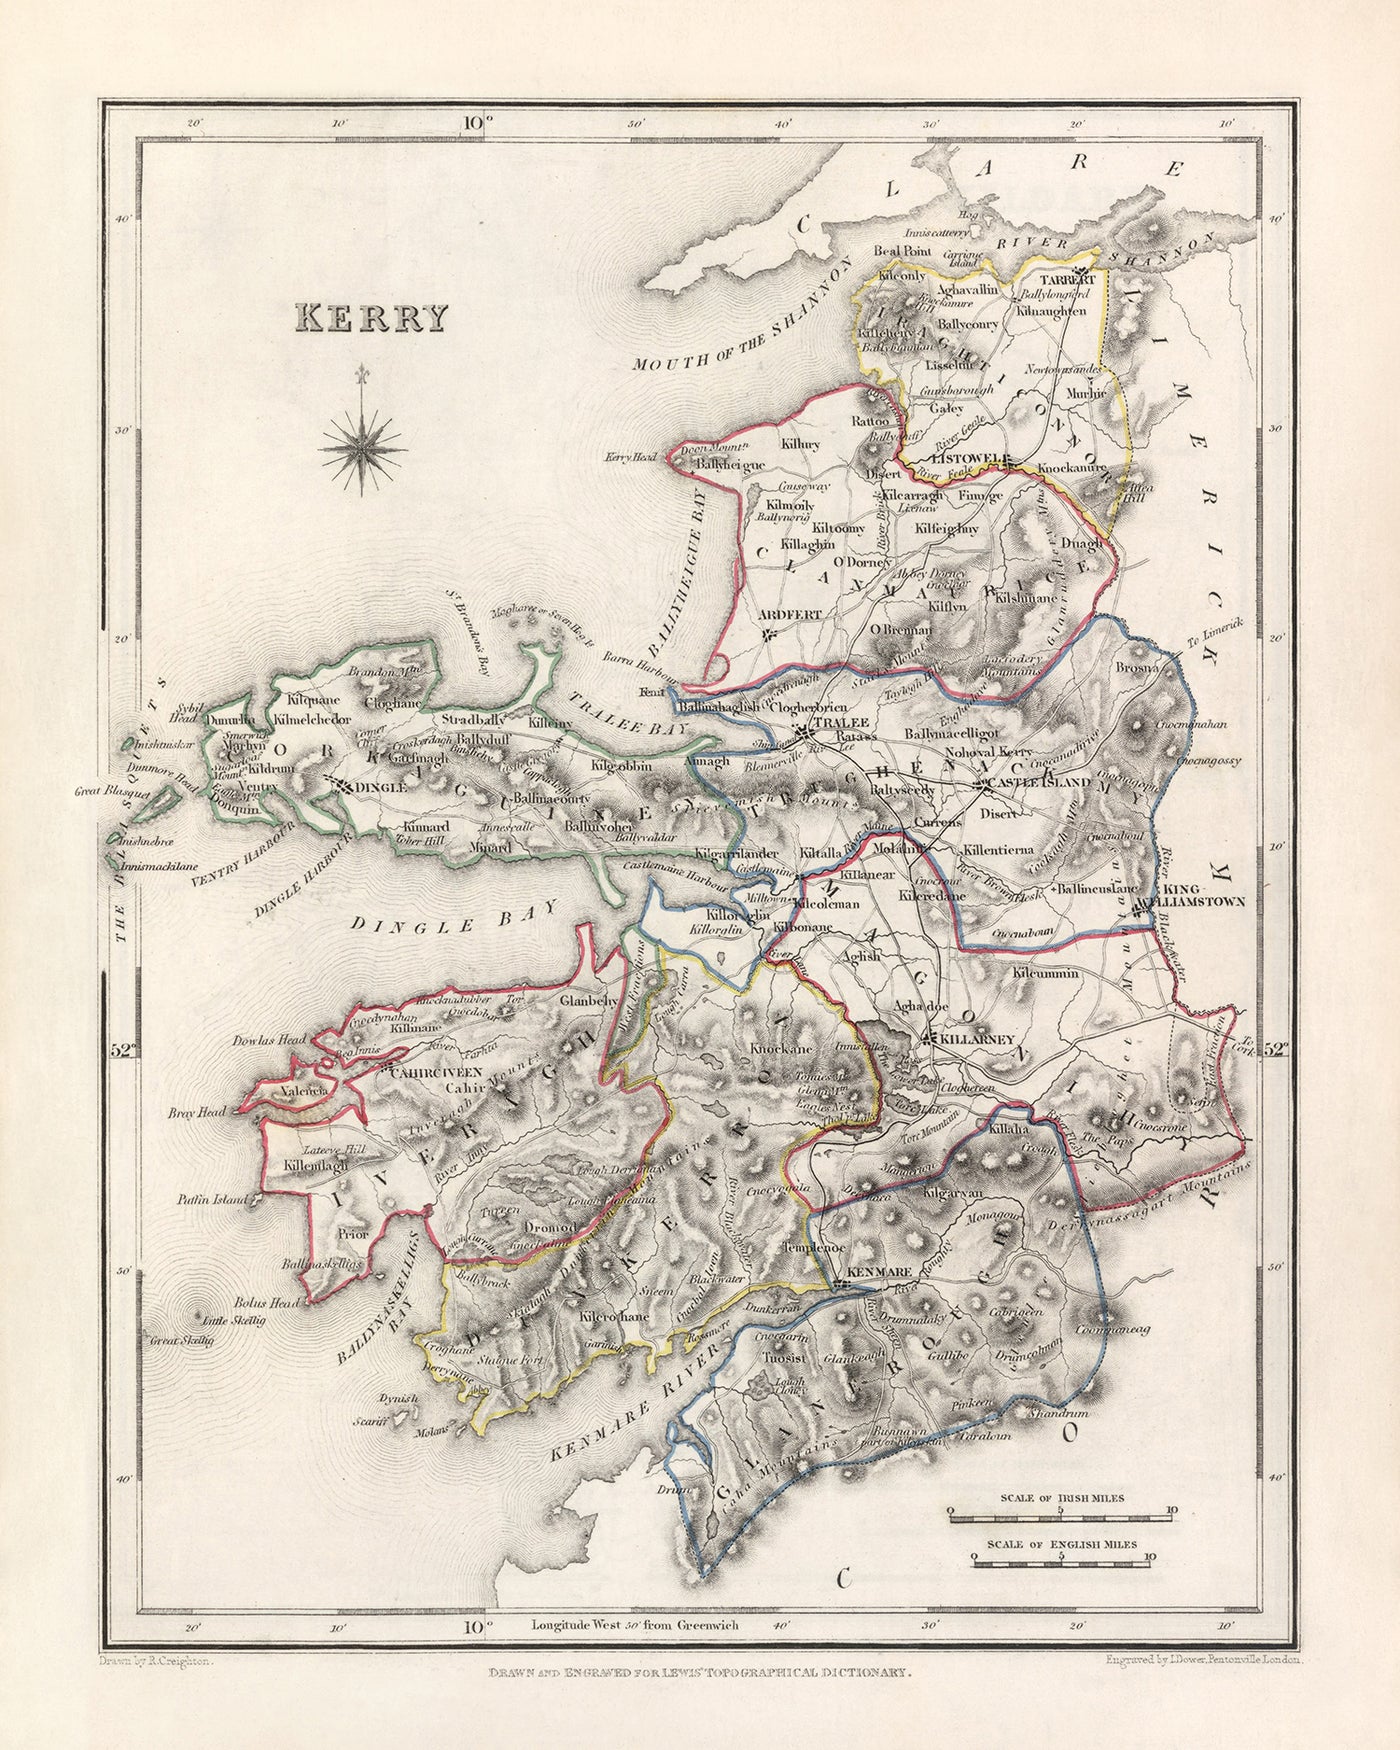 Alte Karte der Grafschaft Kerry von Samuel Lewis, 1844: Tralee, Killarney, Dingle, Kenmare und Listowel